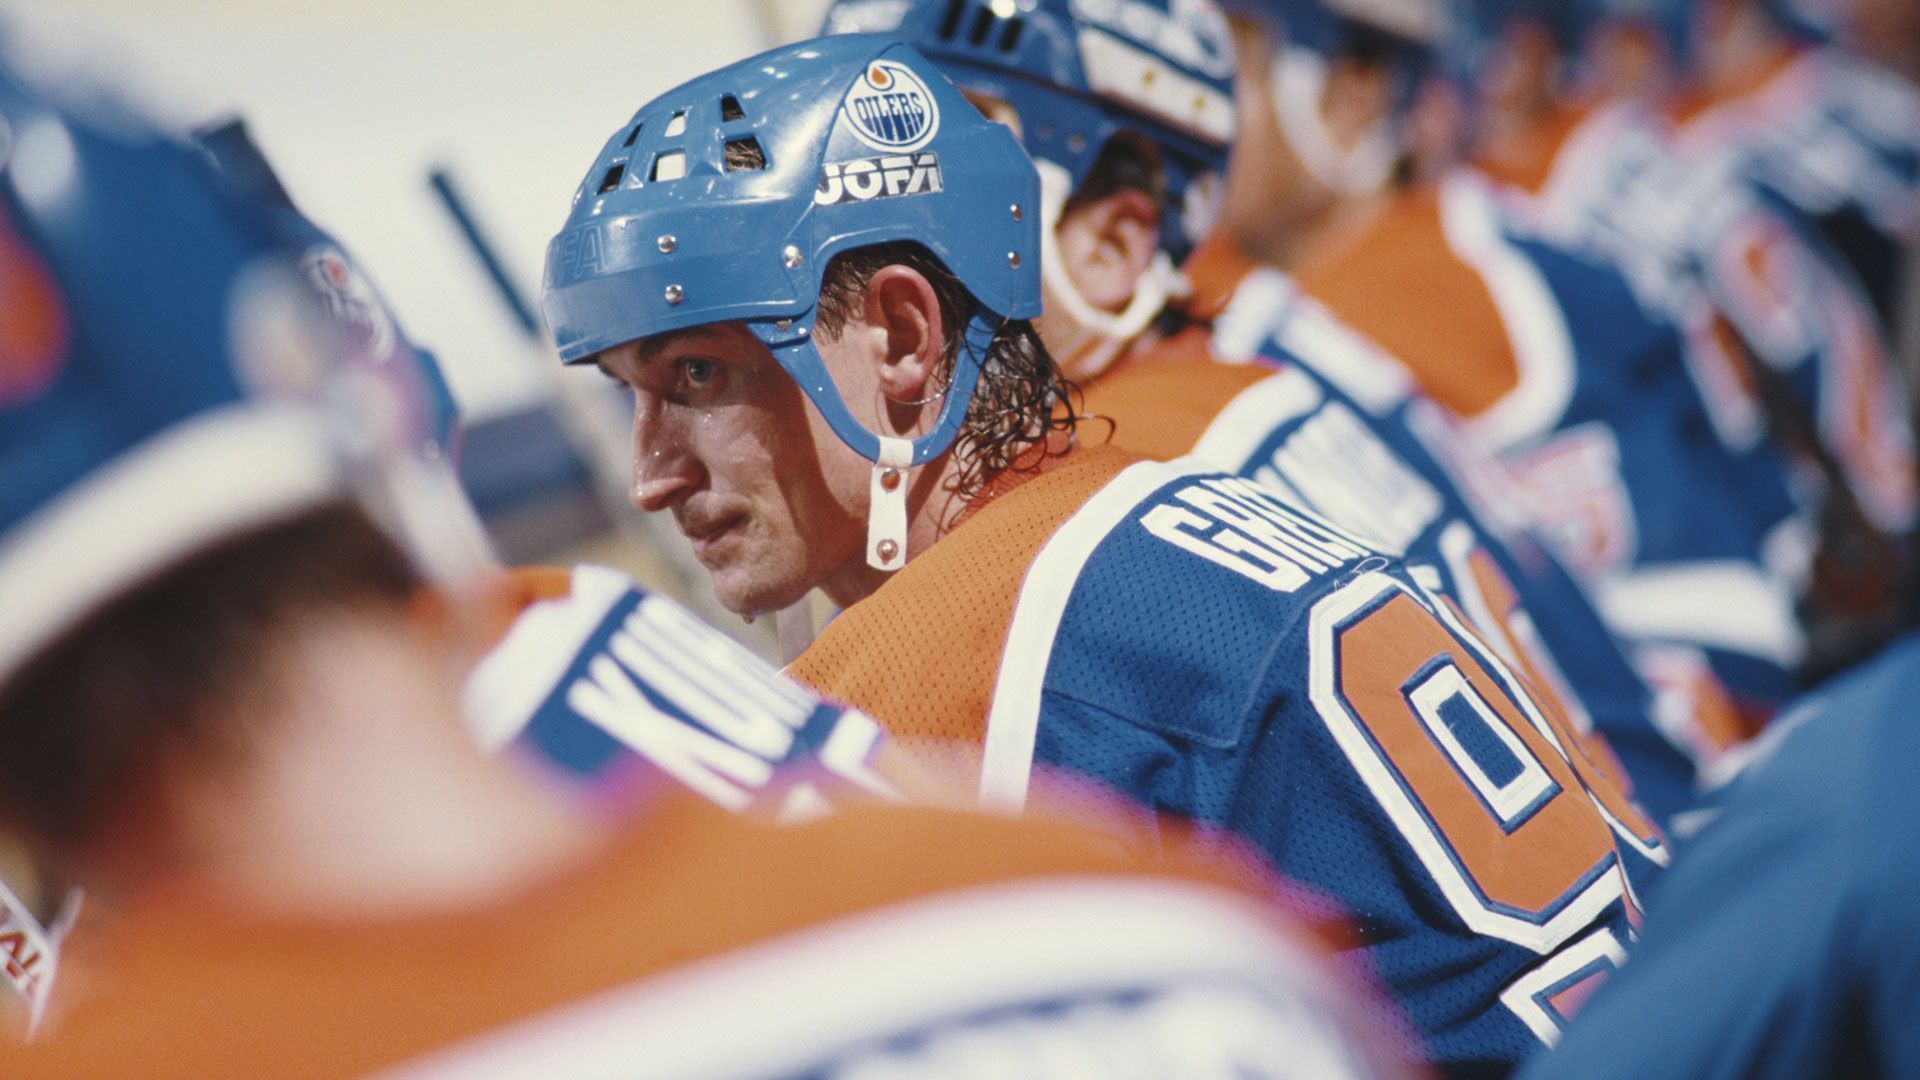 <strong>Die meisten Tore in einem Spiel: Chicago vs. Edmonton und Toronto vs. Montreal</strong><br>
                Keine NHL-Rekordgalerie ohne den wahrscheinlich besten Eishockeyspieler der Geschichte. Die Oilers mit Wayne Gretzky bezwangen in der Spielzeit 1985/86 die Black Hawks mit 12:9. "The Great One" erzielte zwar selbst keinen Treffer, bereitete aber sieben vor. Sieben Vorlagen schaffte Gretzky dreimal in seiner NHL-Karriere, natürlich ebenfalls NHL-Rekord. Die 21 Tore sind geteilter Rekord mit einer Partie aus den 20er-Jahren. Die Montreal Canadiens besiegten die Toronto&nbsp;St. Patricks&nbsp;14:7.